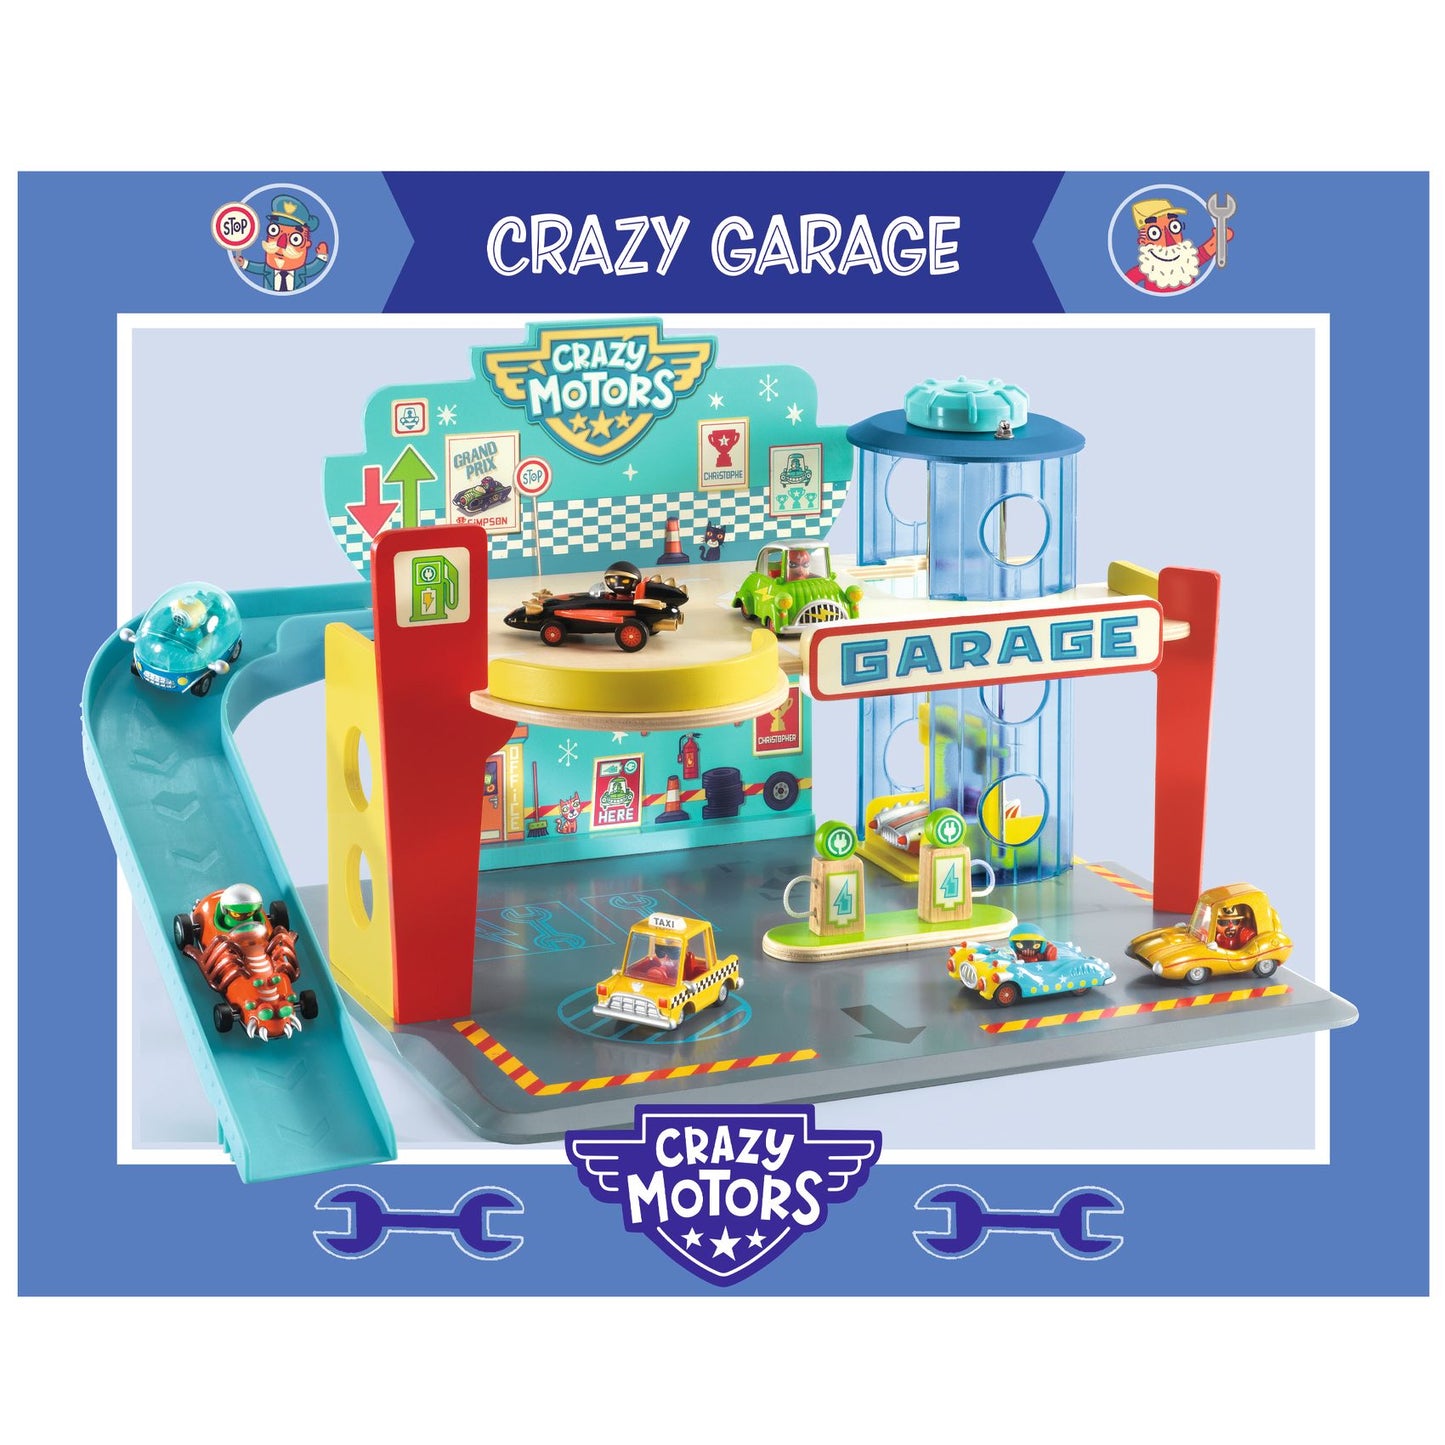 Garage Crazy Motors